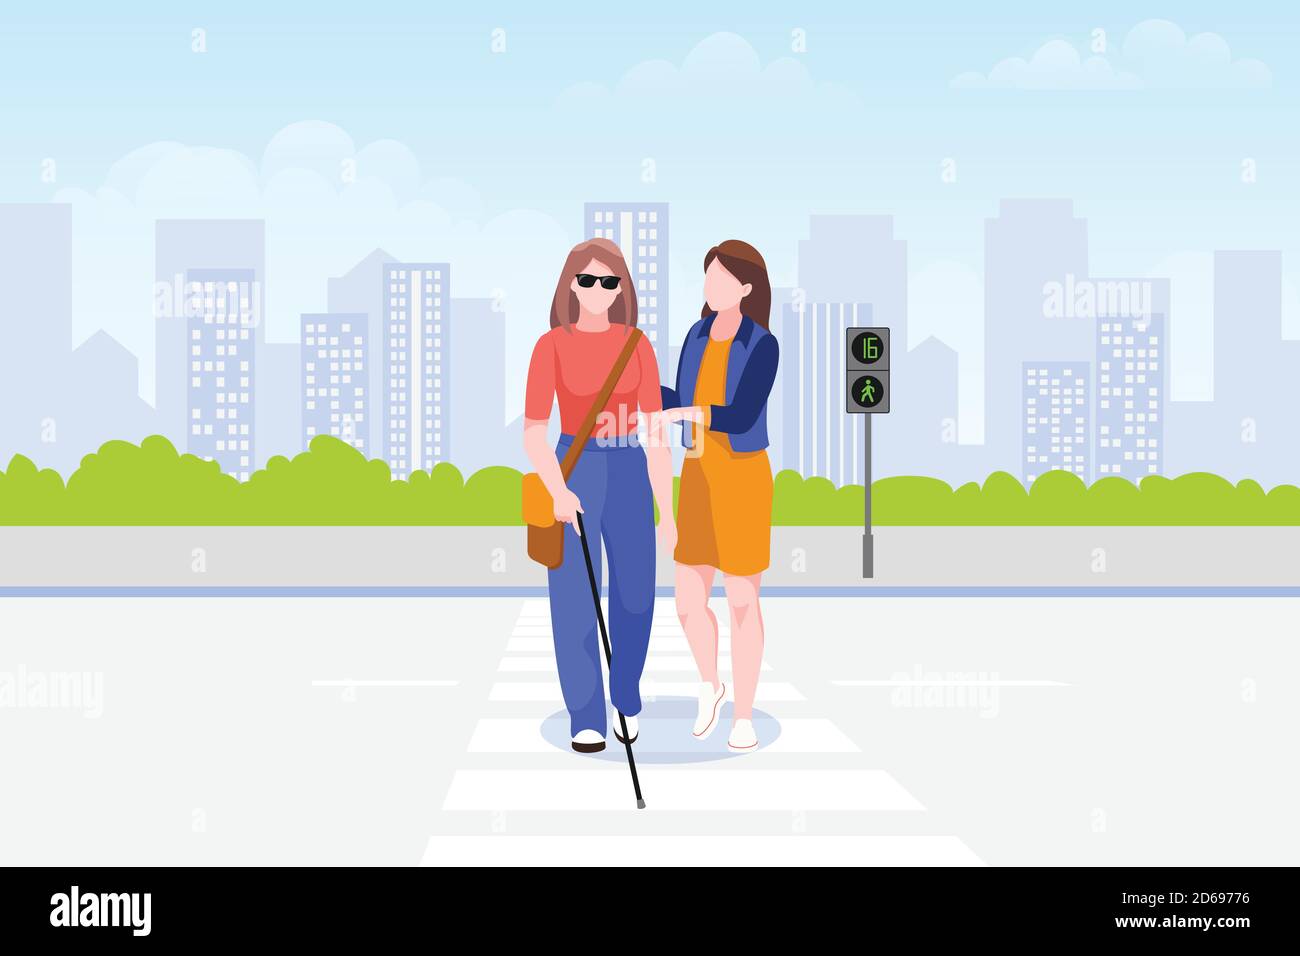 Une jeune femme aide une femme aveugle avec le bâton à traverser la route. Prendre soin des personnes handicapées. Illustration de dessin animé à plan vectoriel. Dîner social Illustration de Vecteur